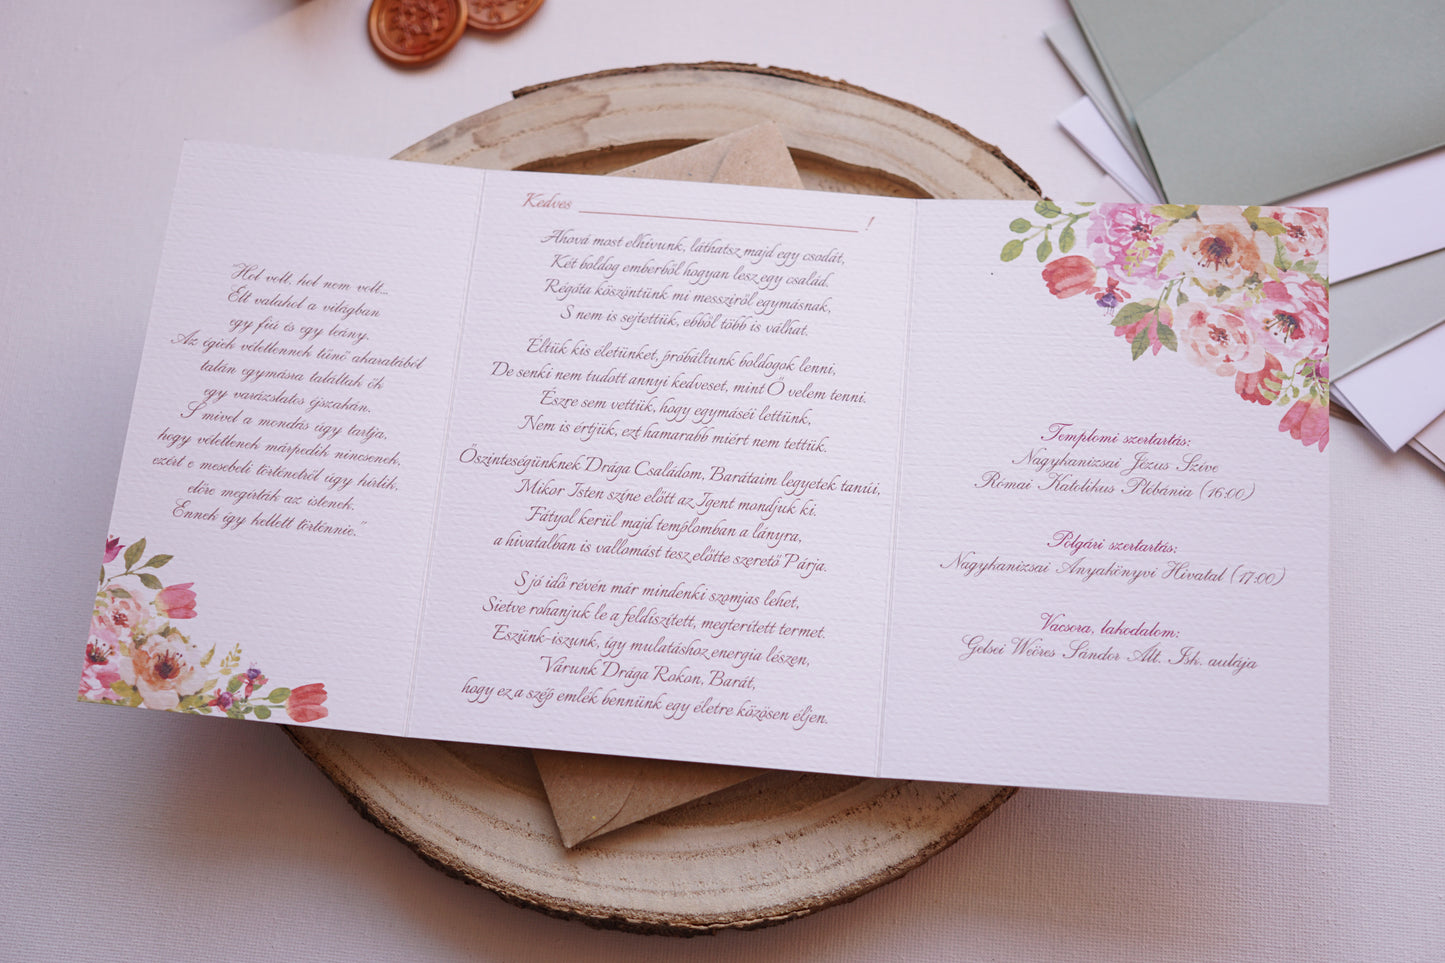 Esküvői meghívó EM24 - Kinyitható Virágmintás esküvői meghívó - Erdélyi Esküvői Meghívók - Wedding invitation EM24 - Kinyitható Virágmintás esküvői meghívó - invitatii de nunta EM24 - Kinyitható Virágmintás esküvői meghívó